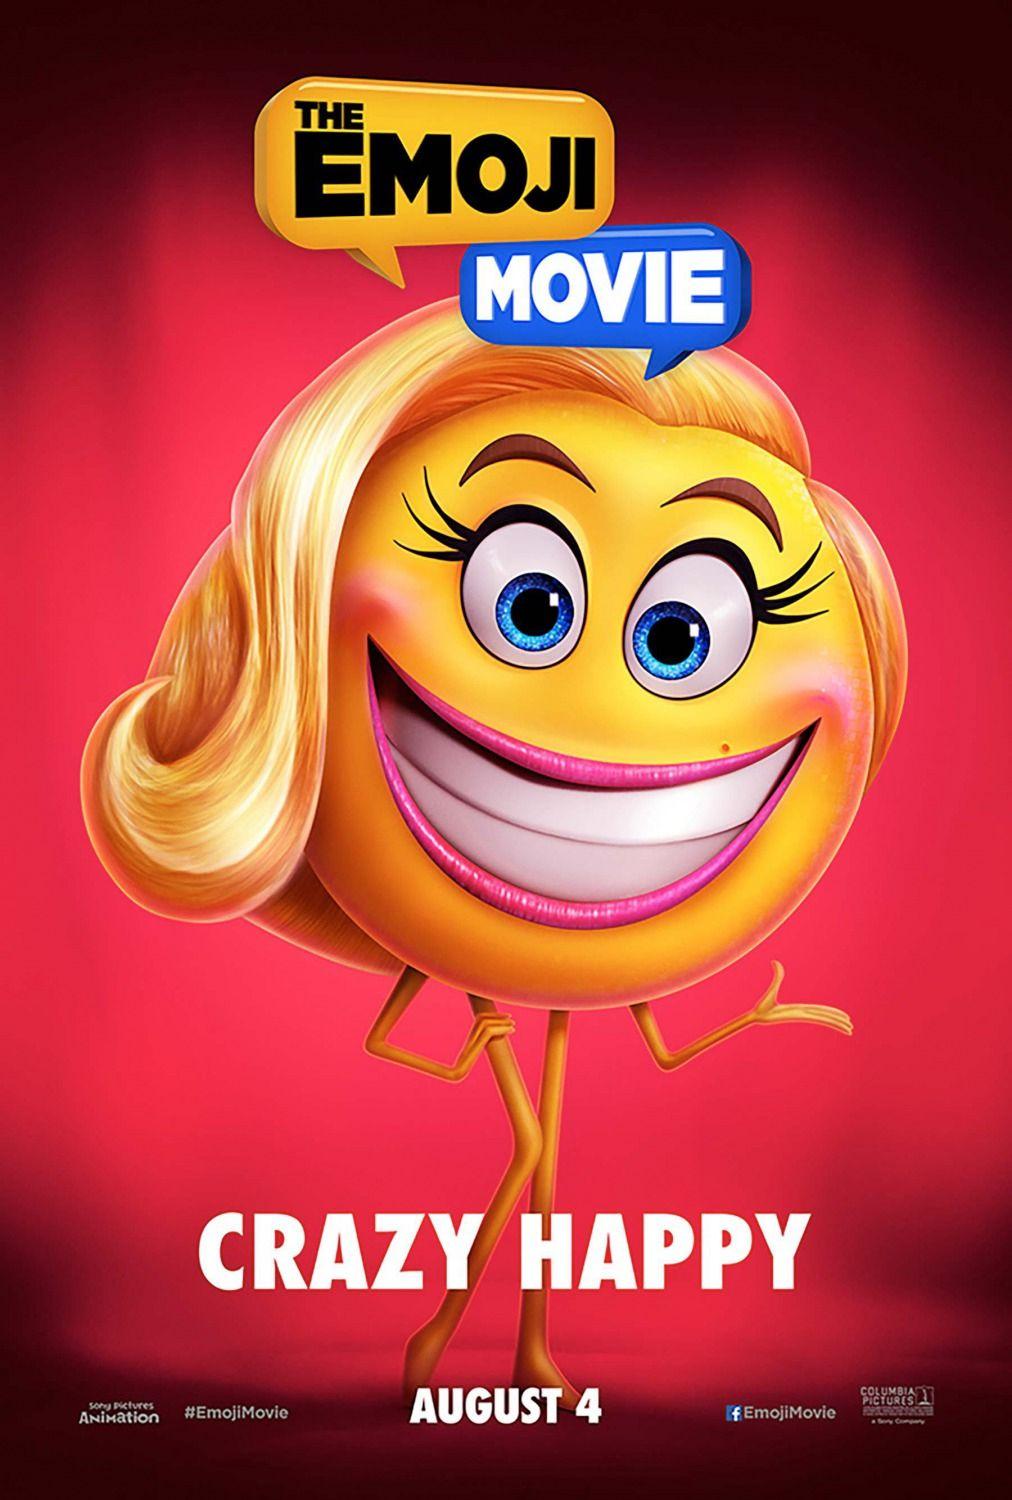 The Emoji Movie 2017 Movie Posters